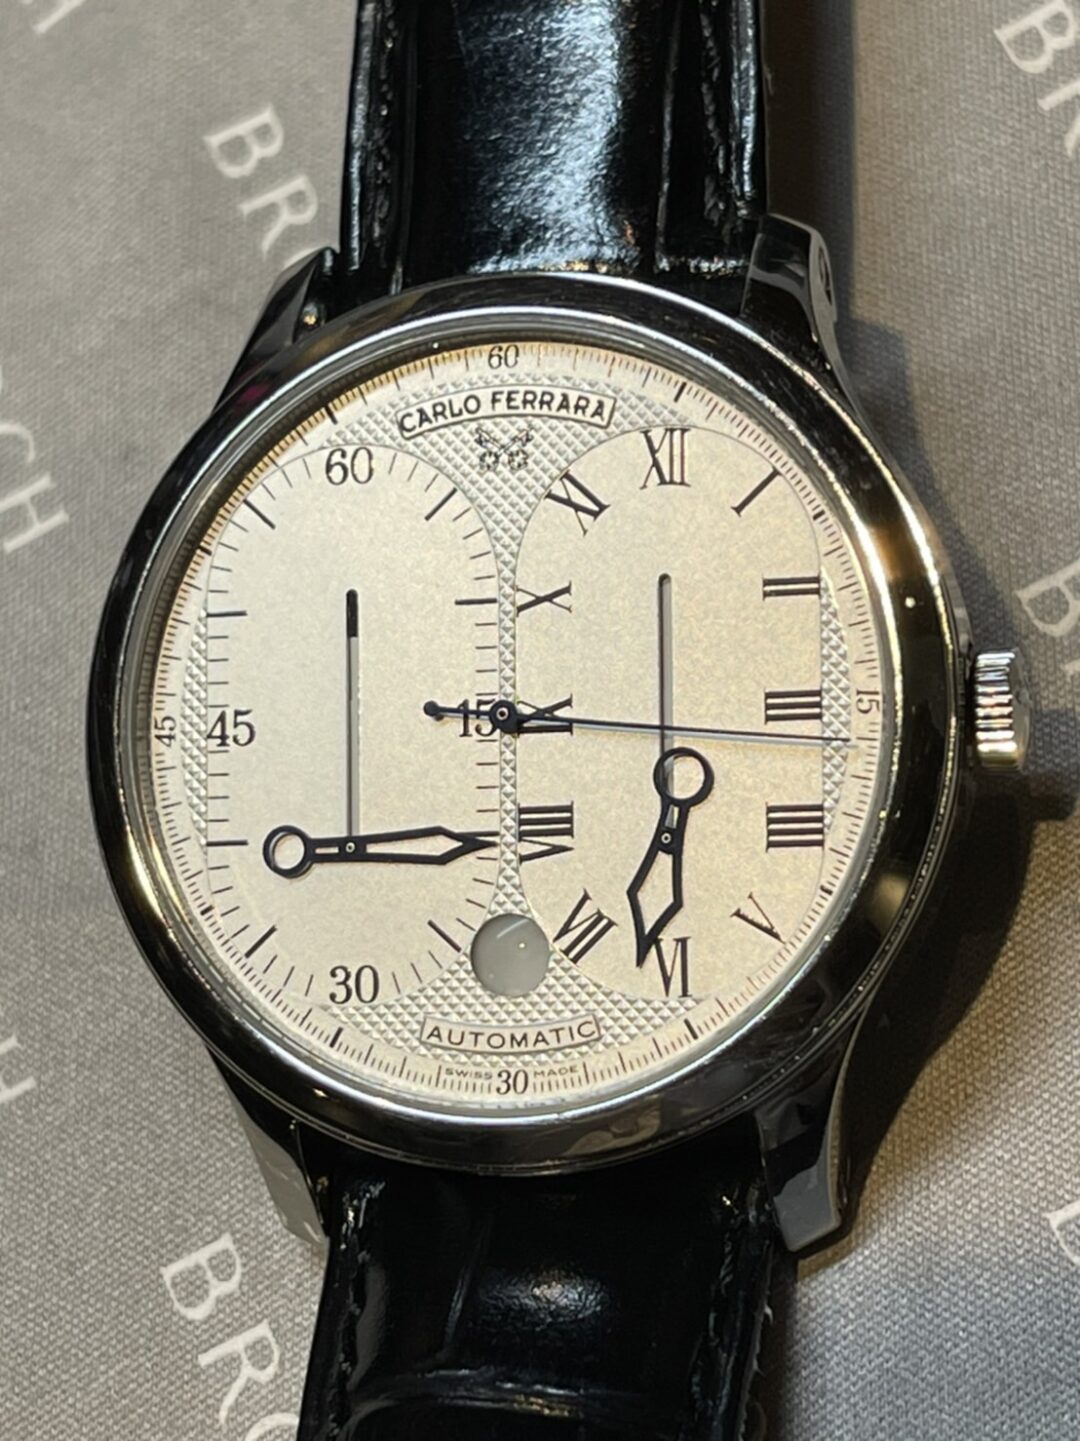 スチームパンク感漂うカルロ・フェラーラの自動巻き腕時計はとても個性的な見た目と動きをするレギュレーターだった